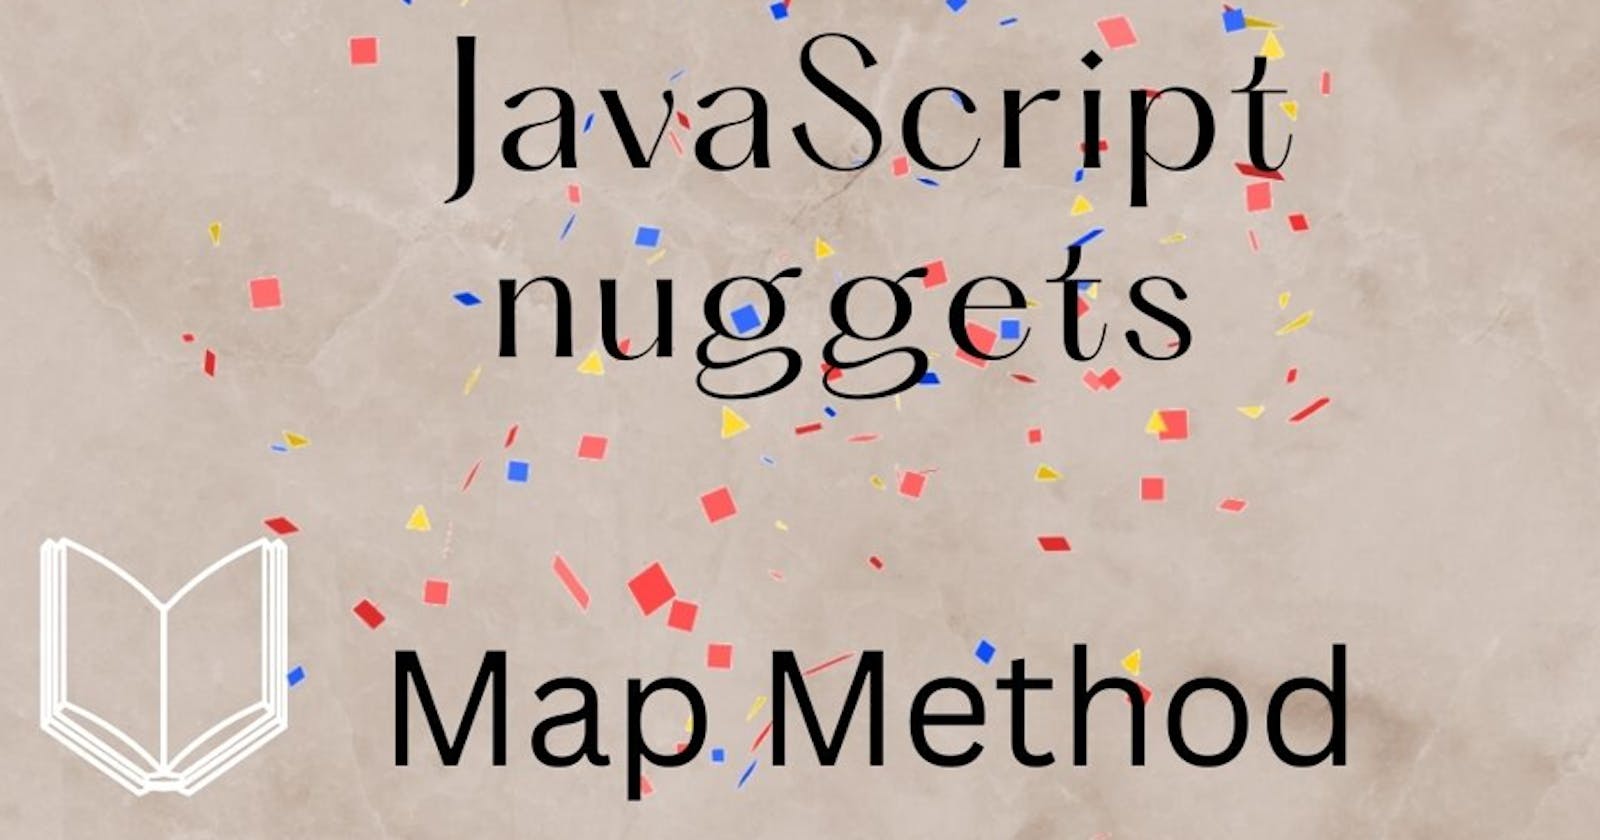 Javascript Nuggets